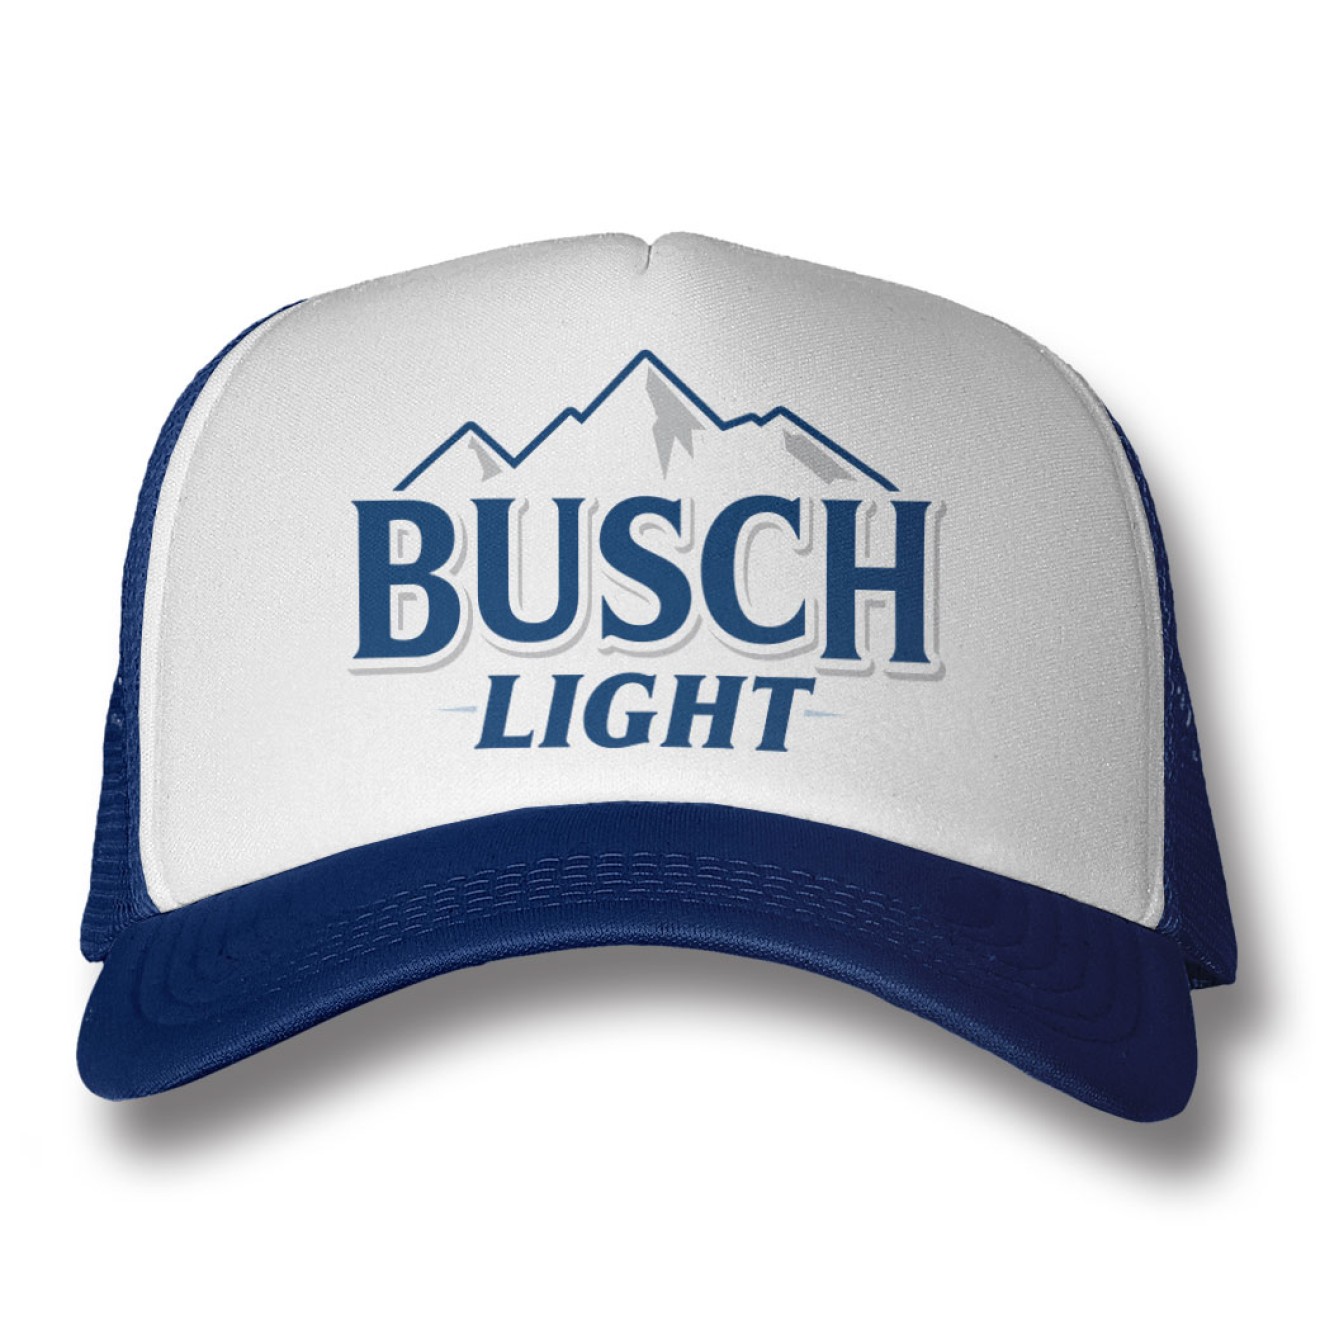 Busch Light Beer Trucker Cap